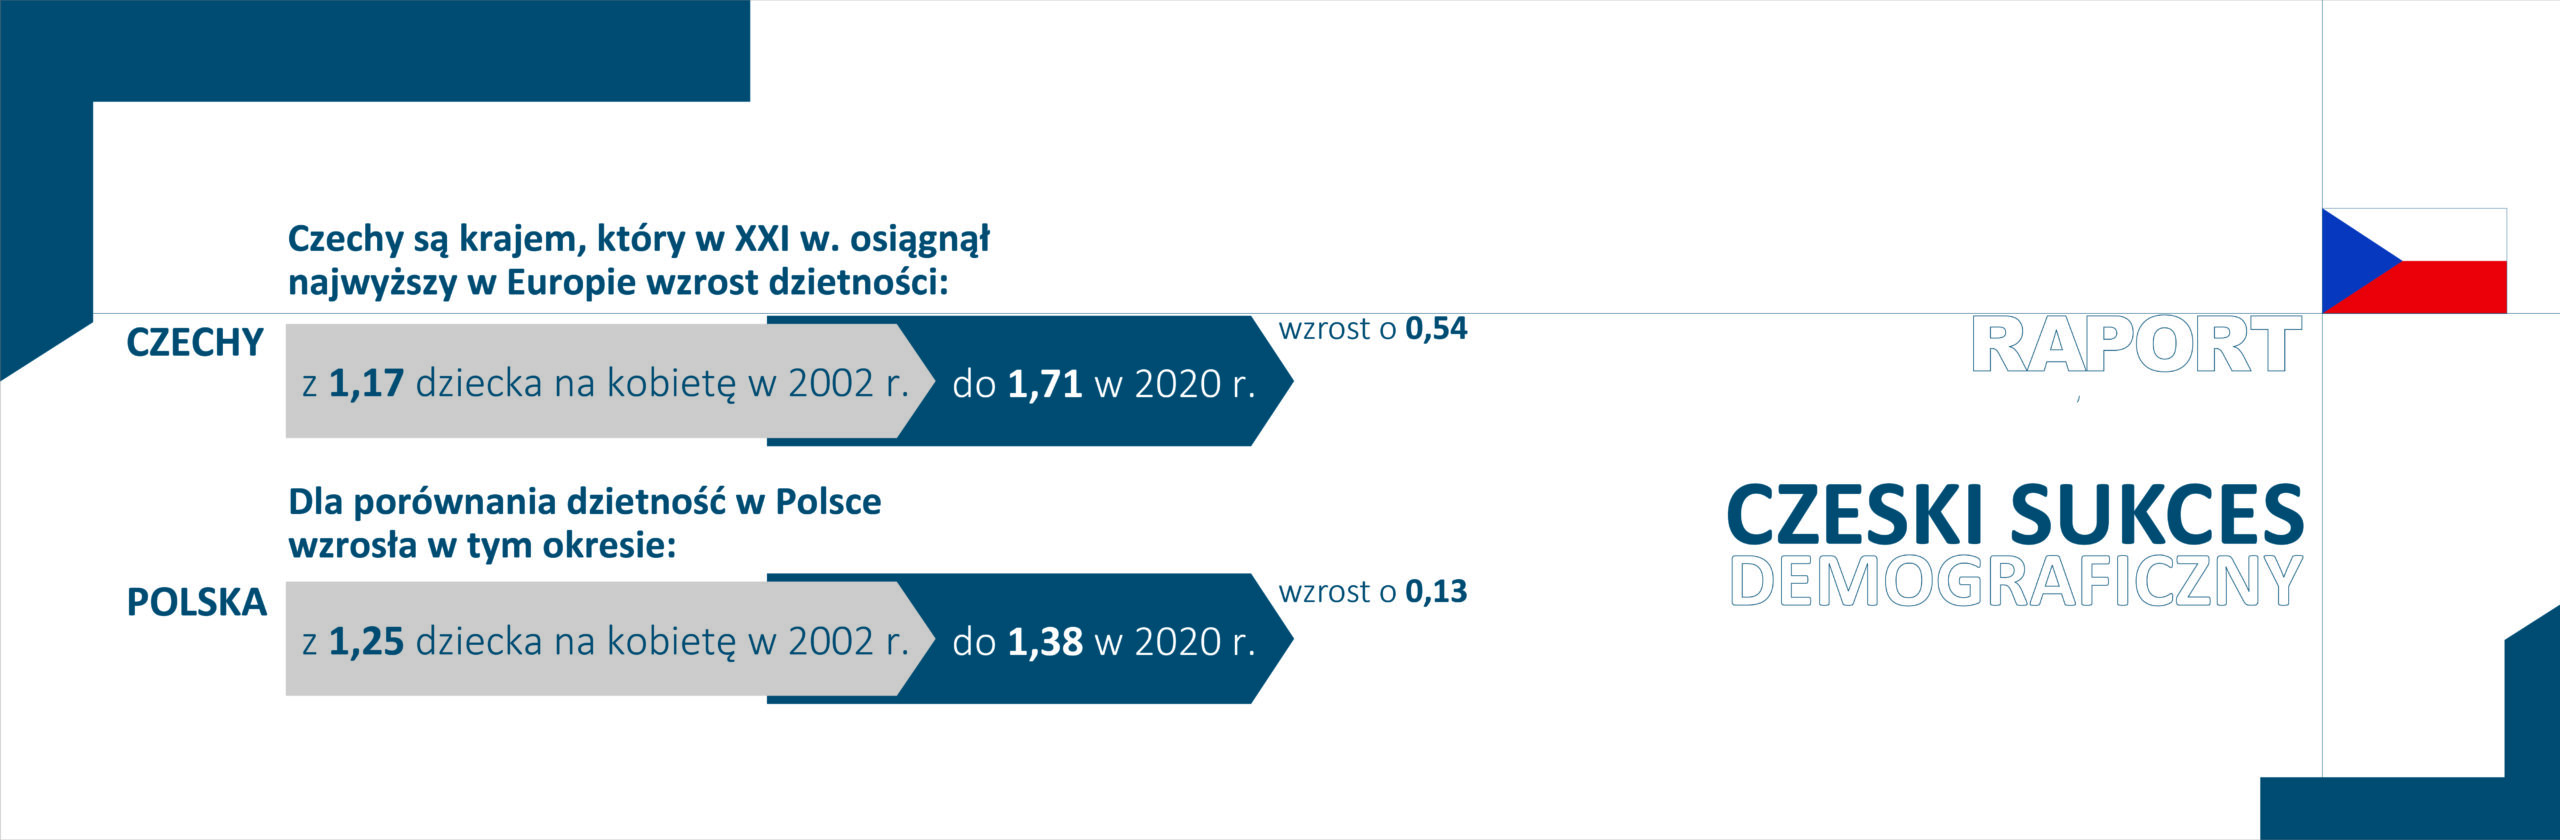 Grafika z hasłem "Raport czeski sukces demograficzny". Z prawej strony dane dotyczące Czech i Polski na temat zmiany wskaźnika dzietności (2002 i 2020)